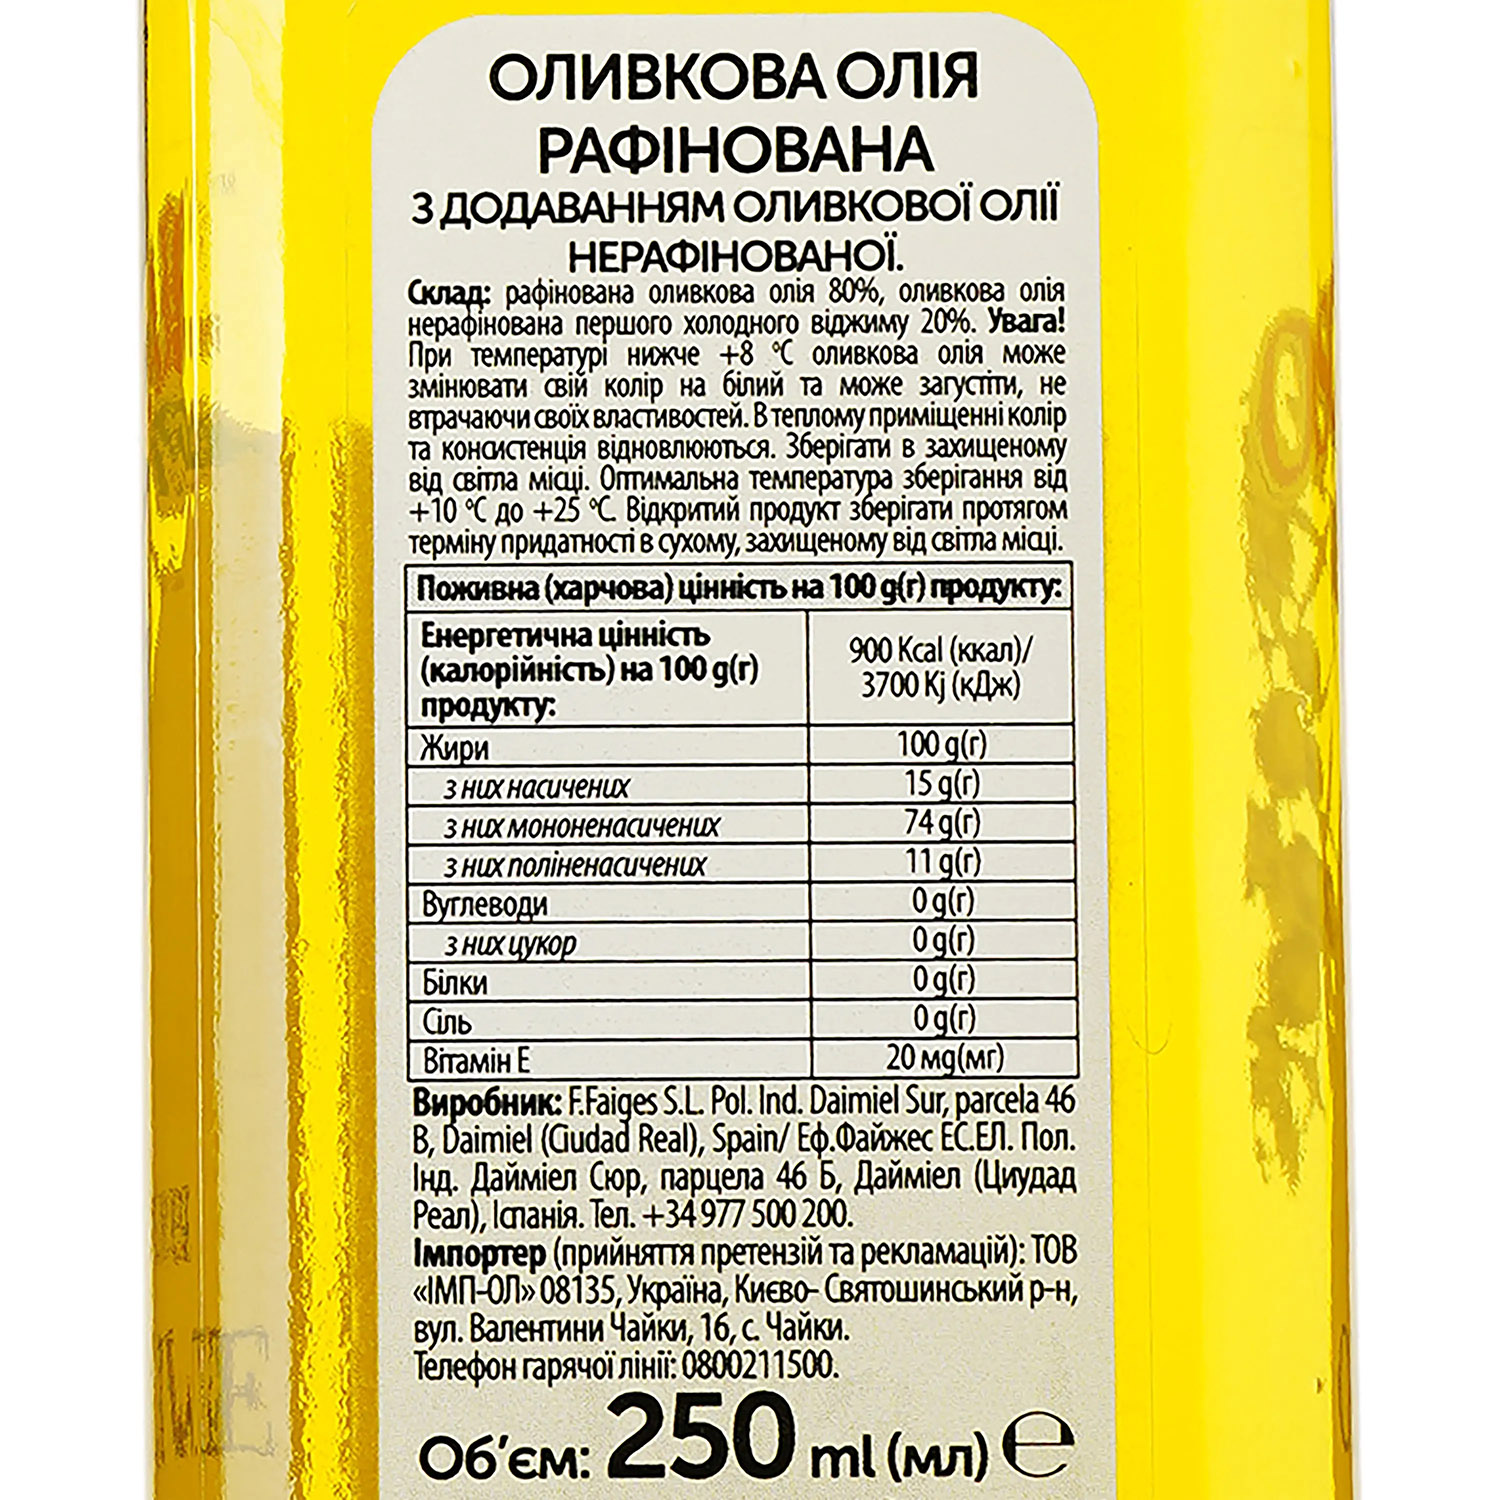 Олія оливкова Oscar Pure рафінована з додаванням оливкової нерафінованої олії 250 мл (905725) - фото 3